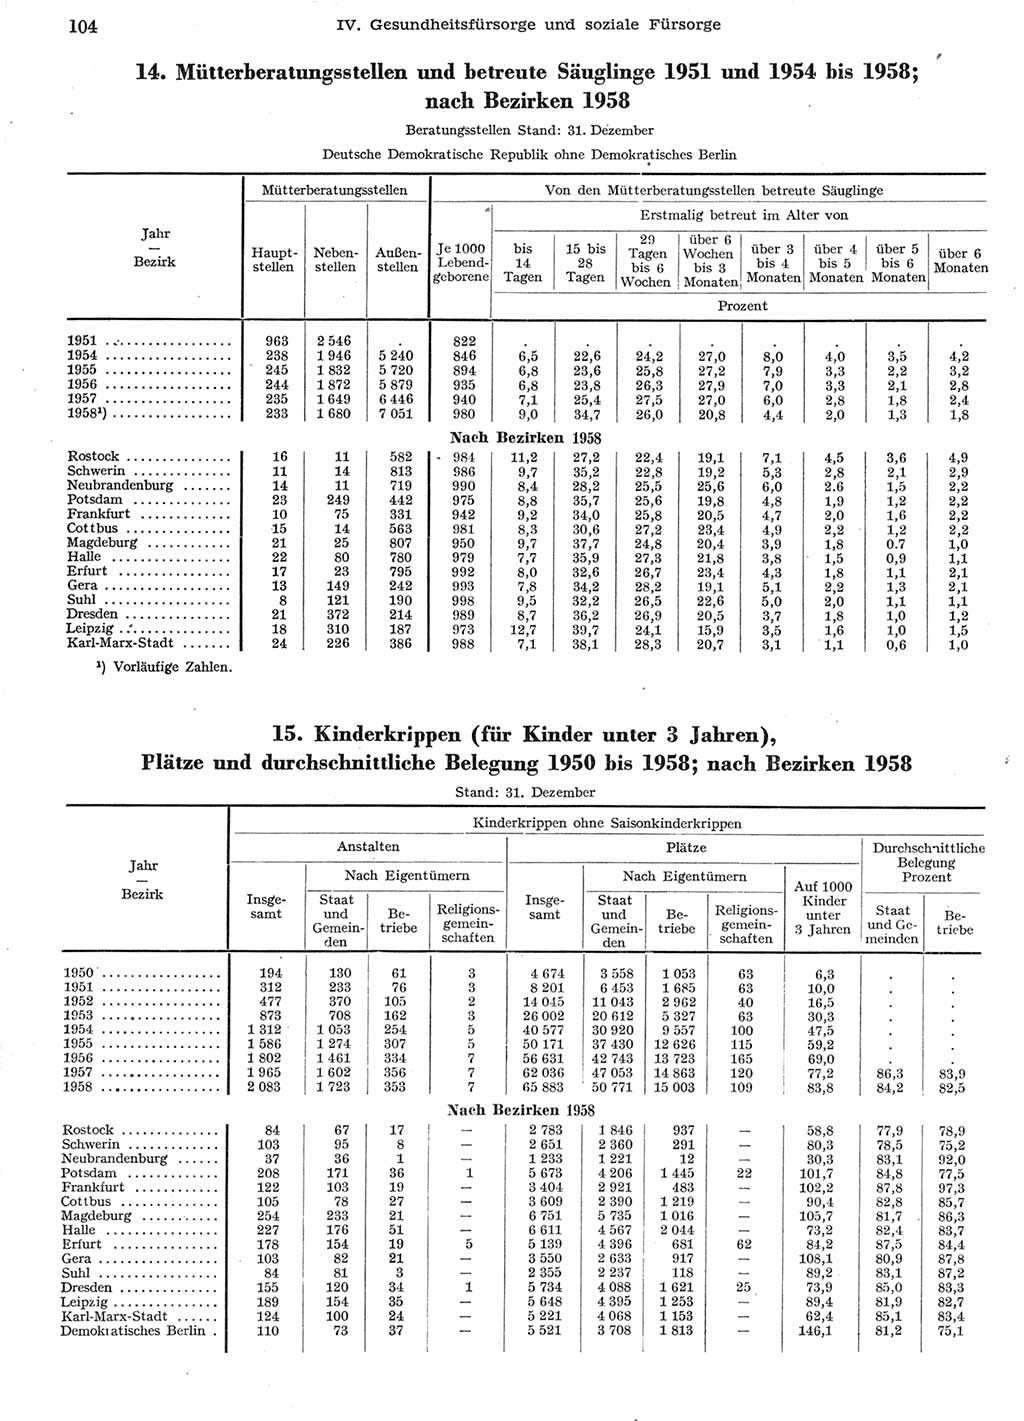 Statistisches Jahrbuch der Deutschen Demokratischen Republik (DDR) 1958, Seite 104 (Stat. Jb. DDR 1958, S. 104)